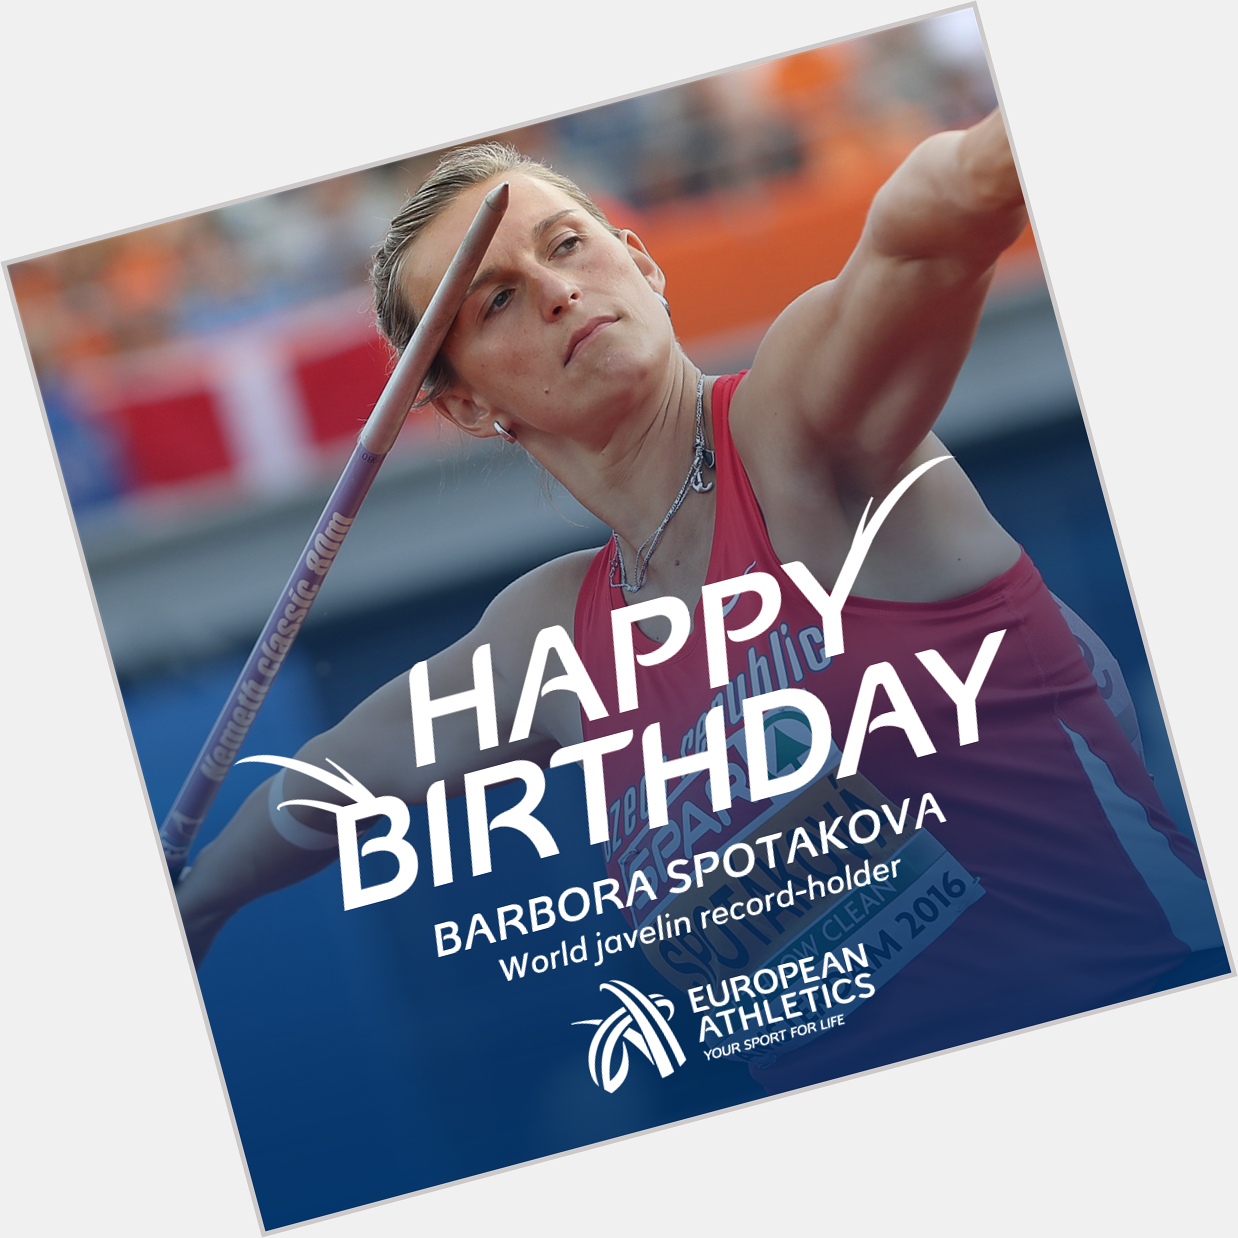 Happy birthday to world javelin record-holder Barbora Spotakova! 